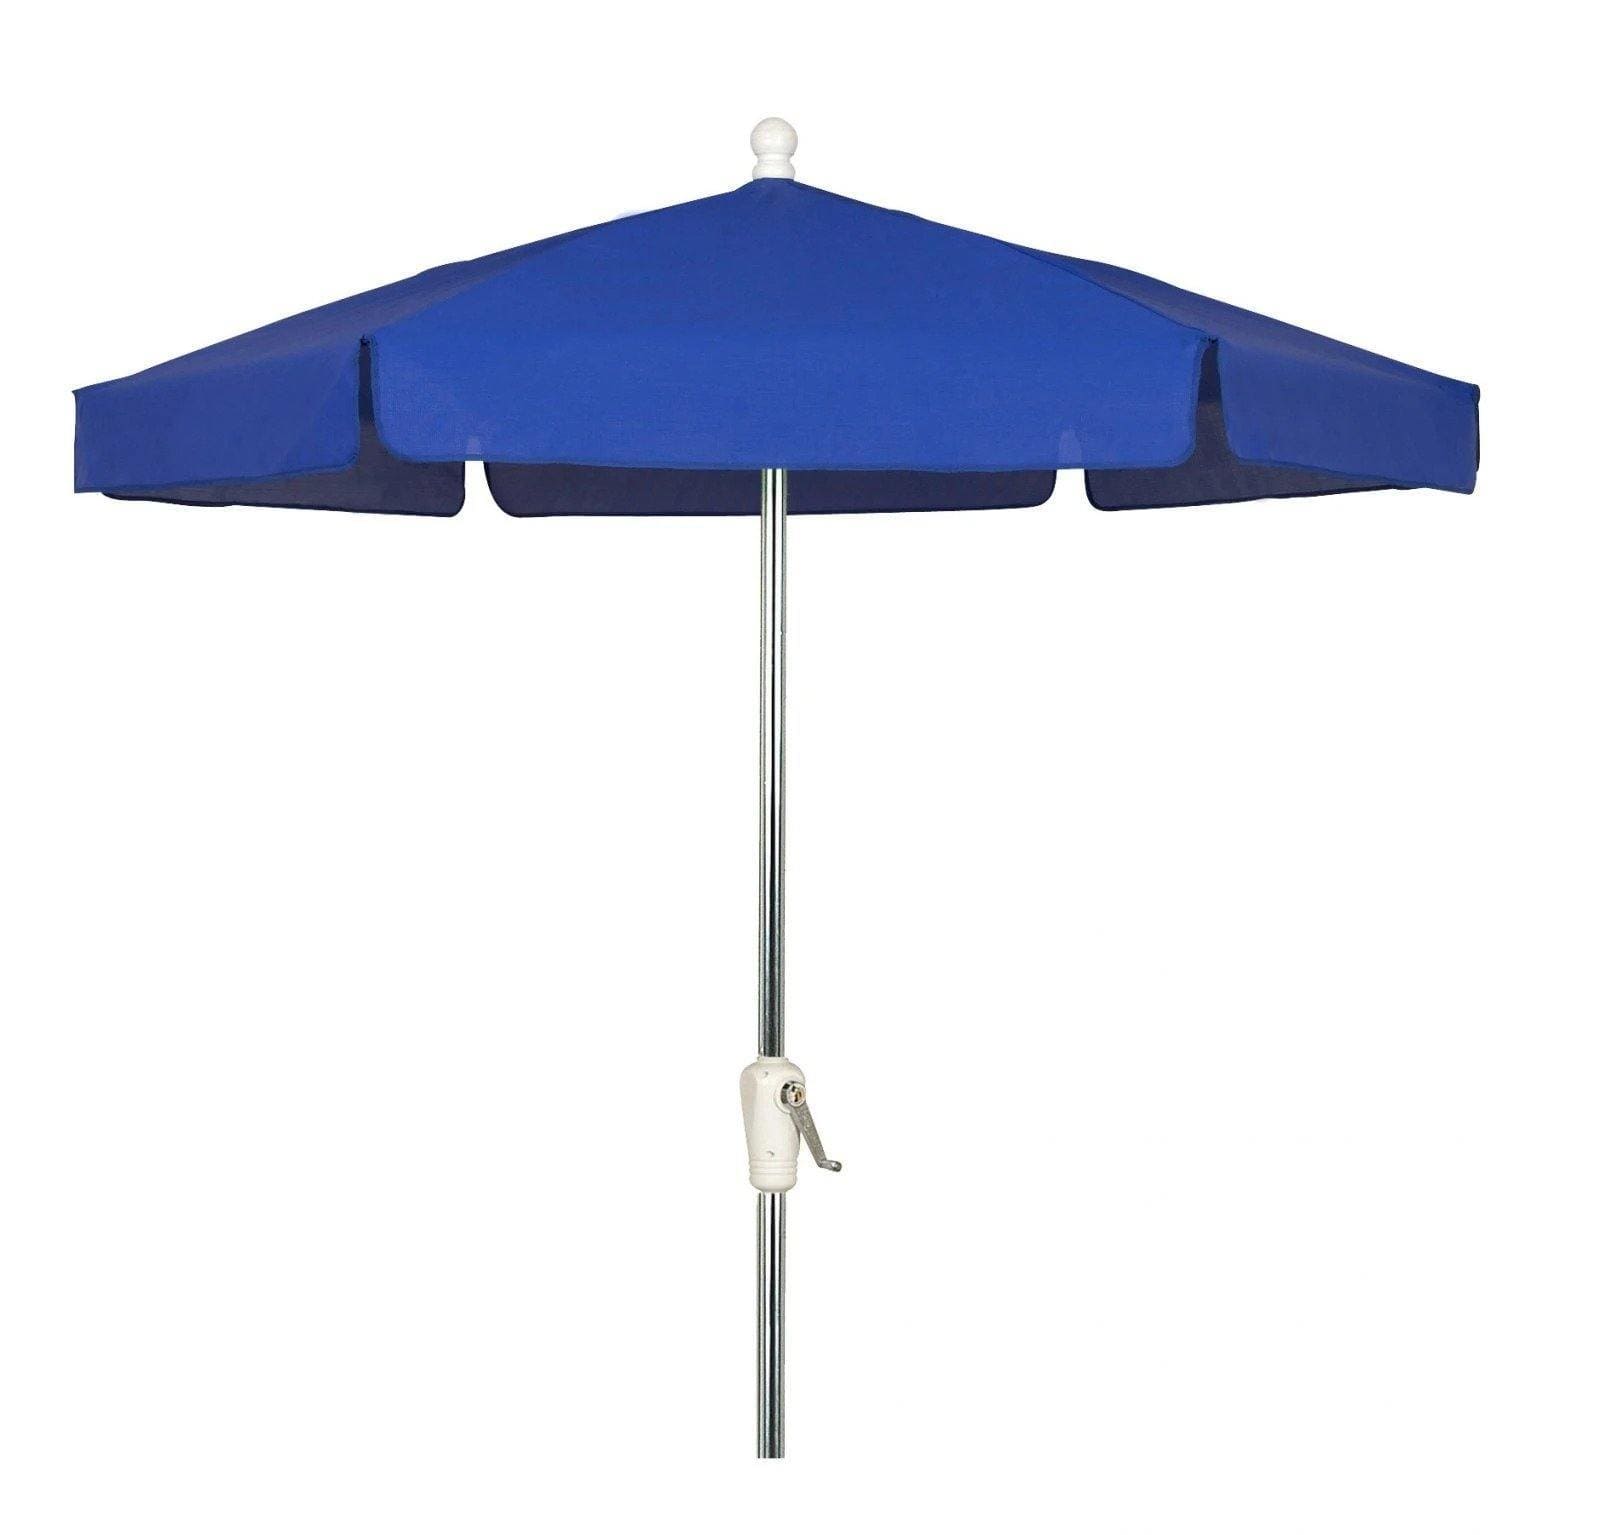 Fiberbuilt Table Umbrellas Pacific Blue Fiberbuilt 7.5' Garden Umbrella w/ Crank Lift